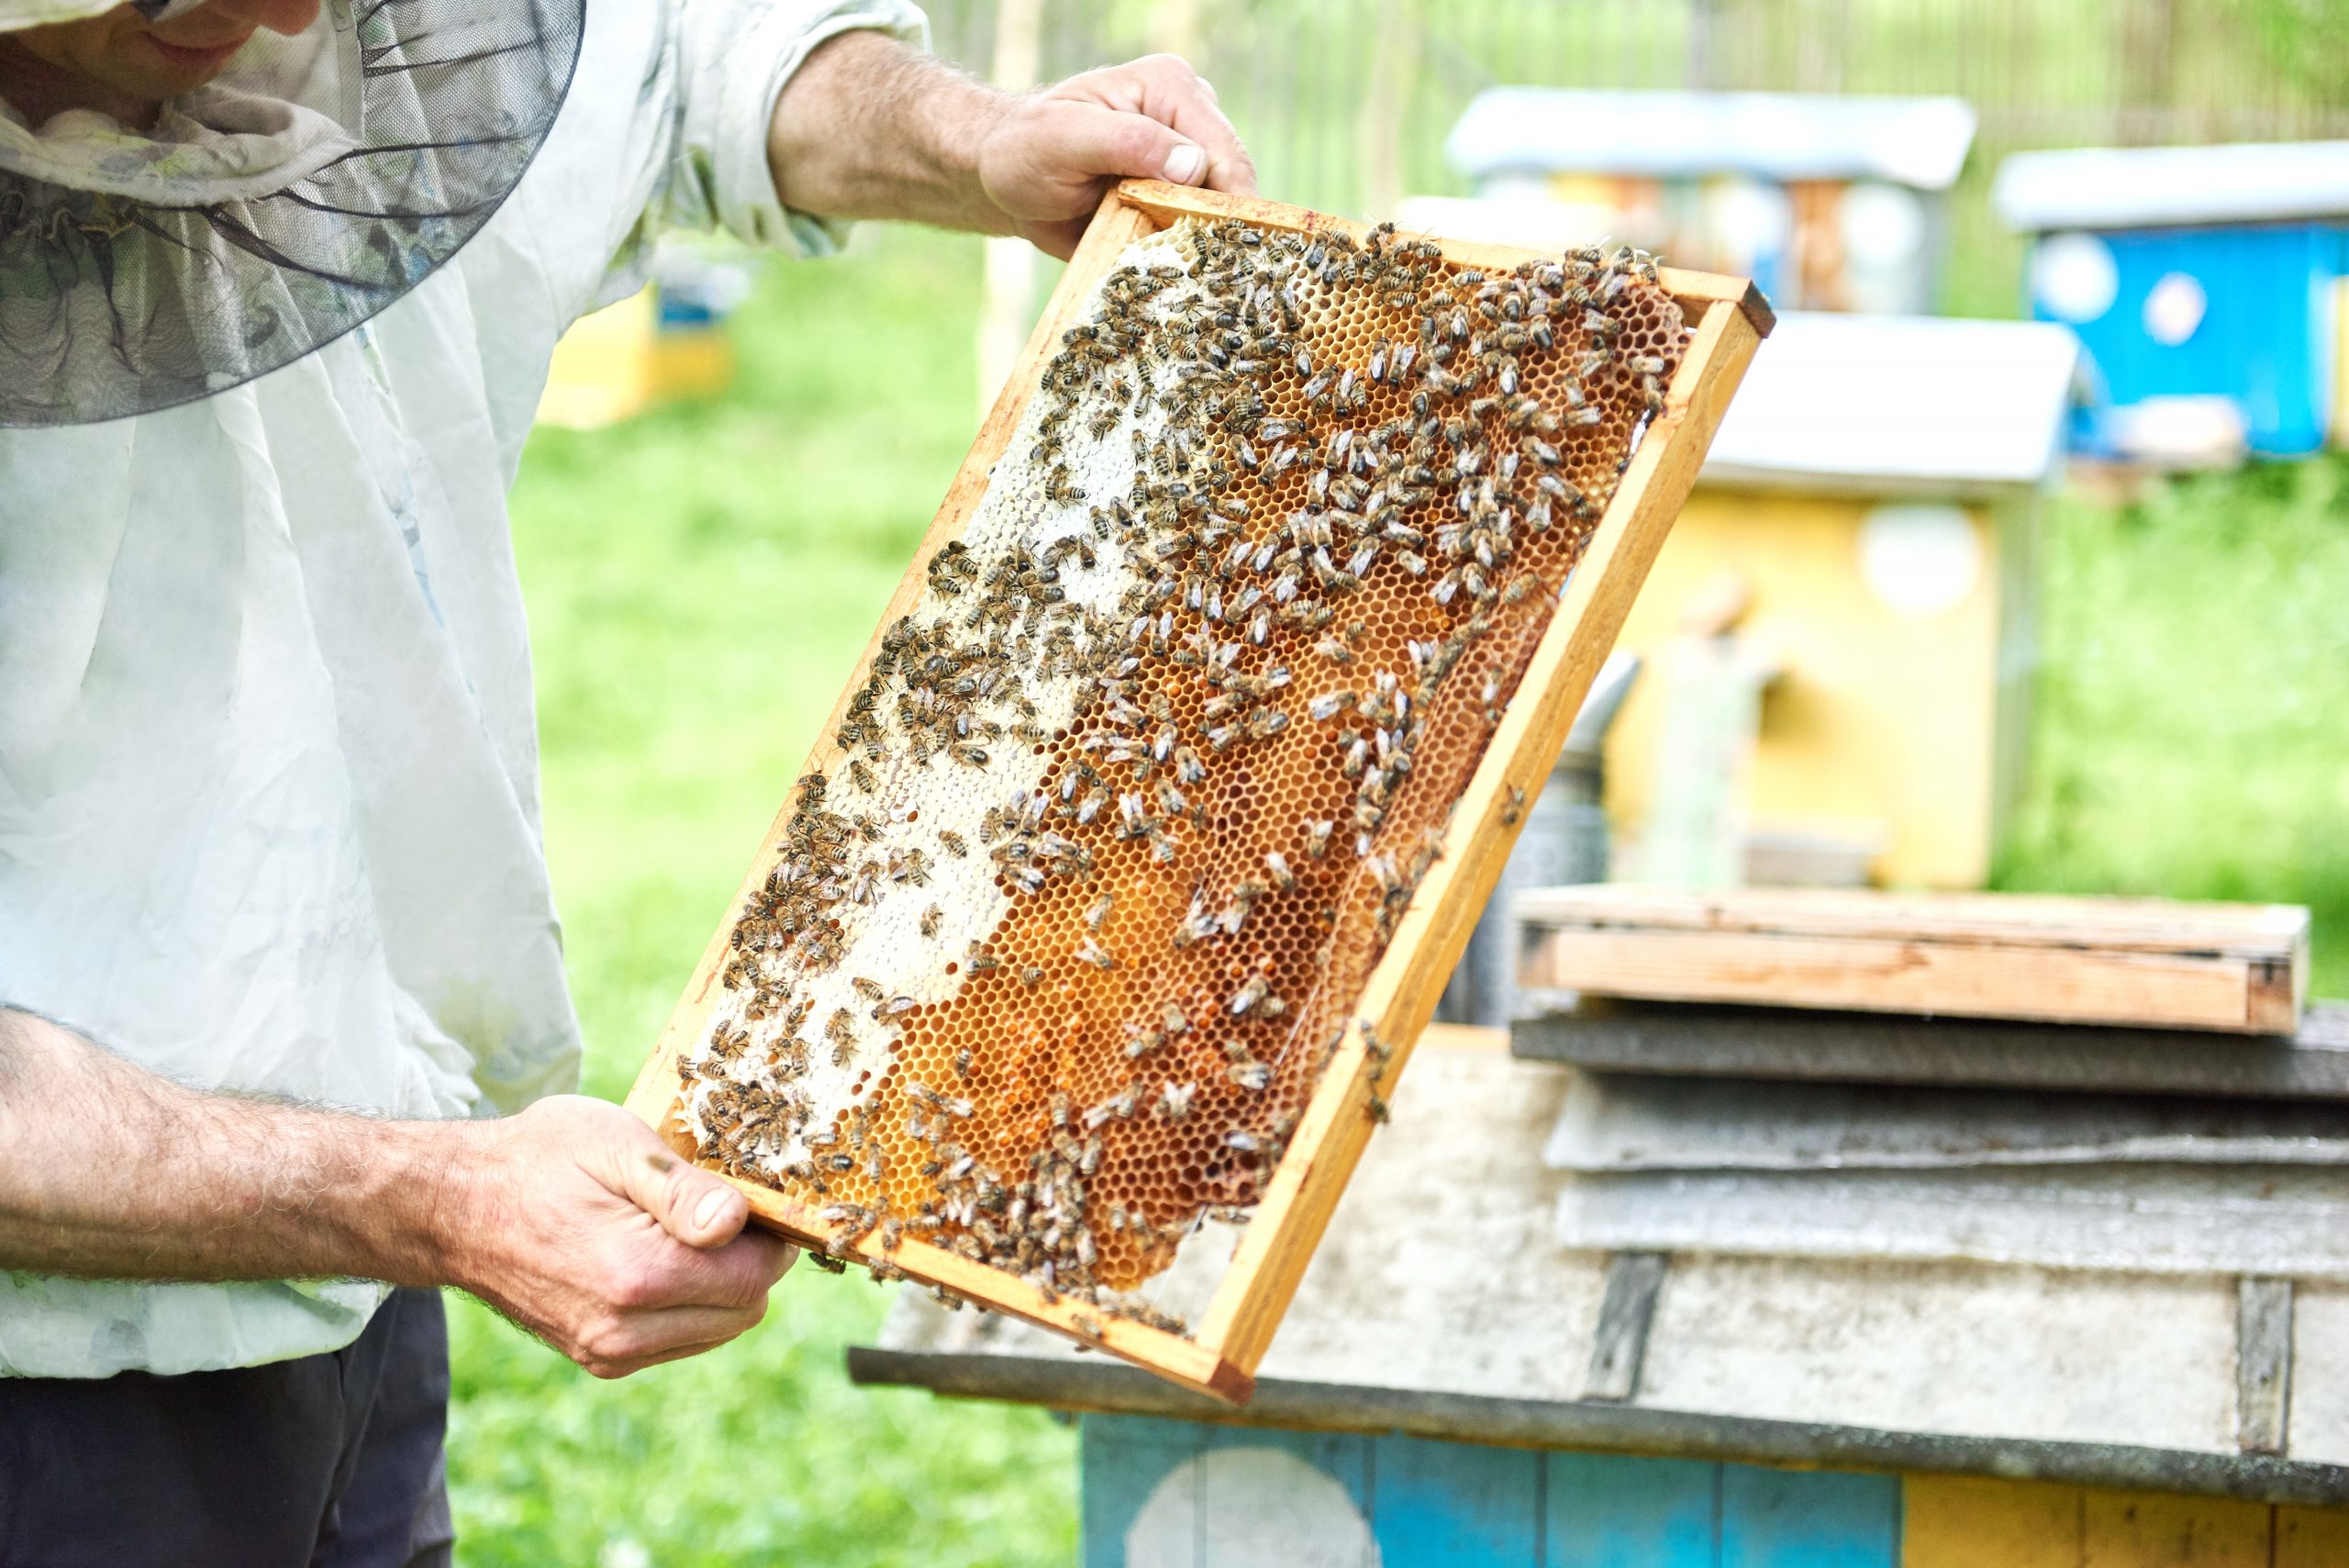 Prefeitura de Franca oferece curso gratuito de apicultura